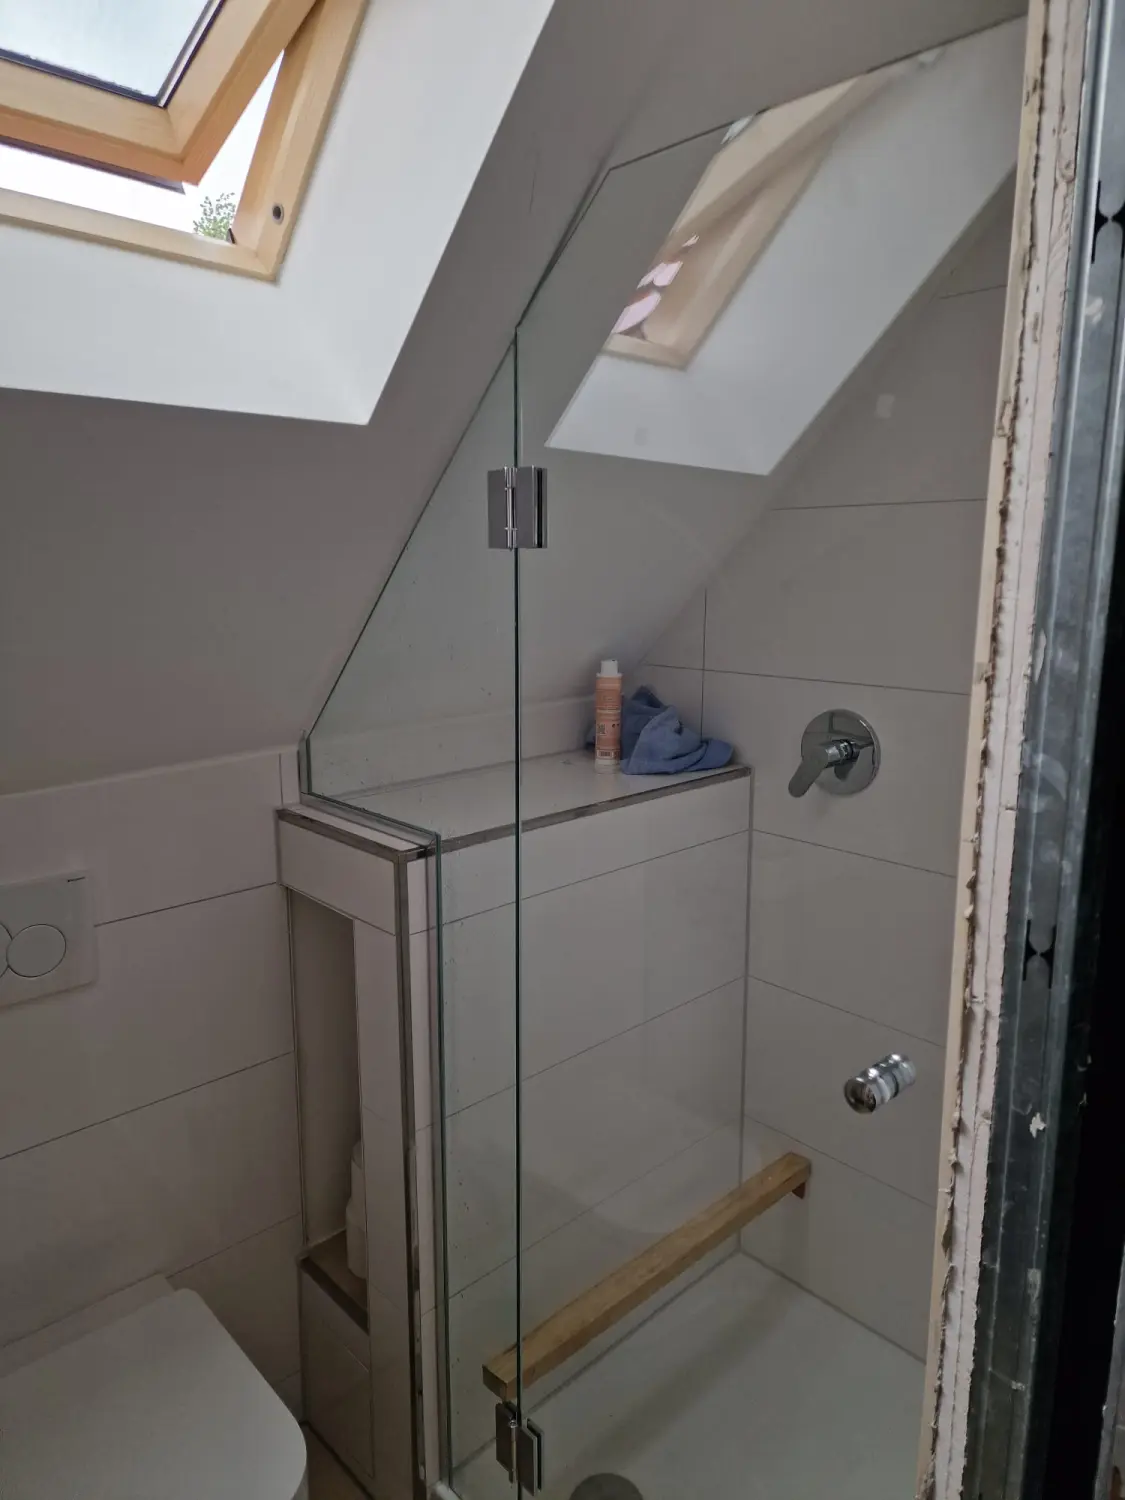 Duschen in Dachschrägen von Ganzglasduschen-Fras-Biermann-München